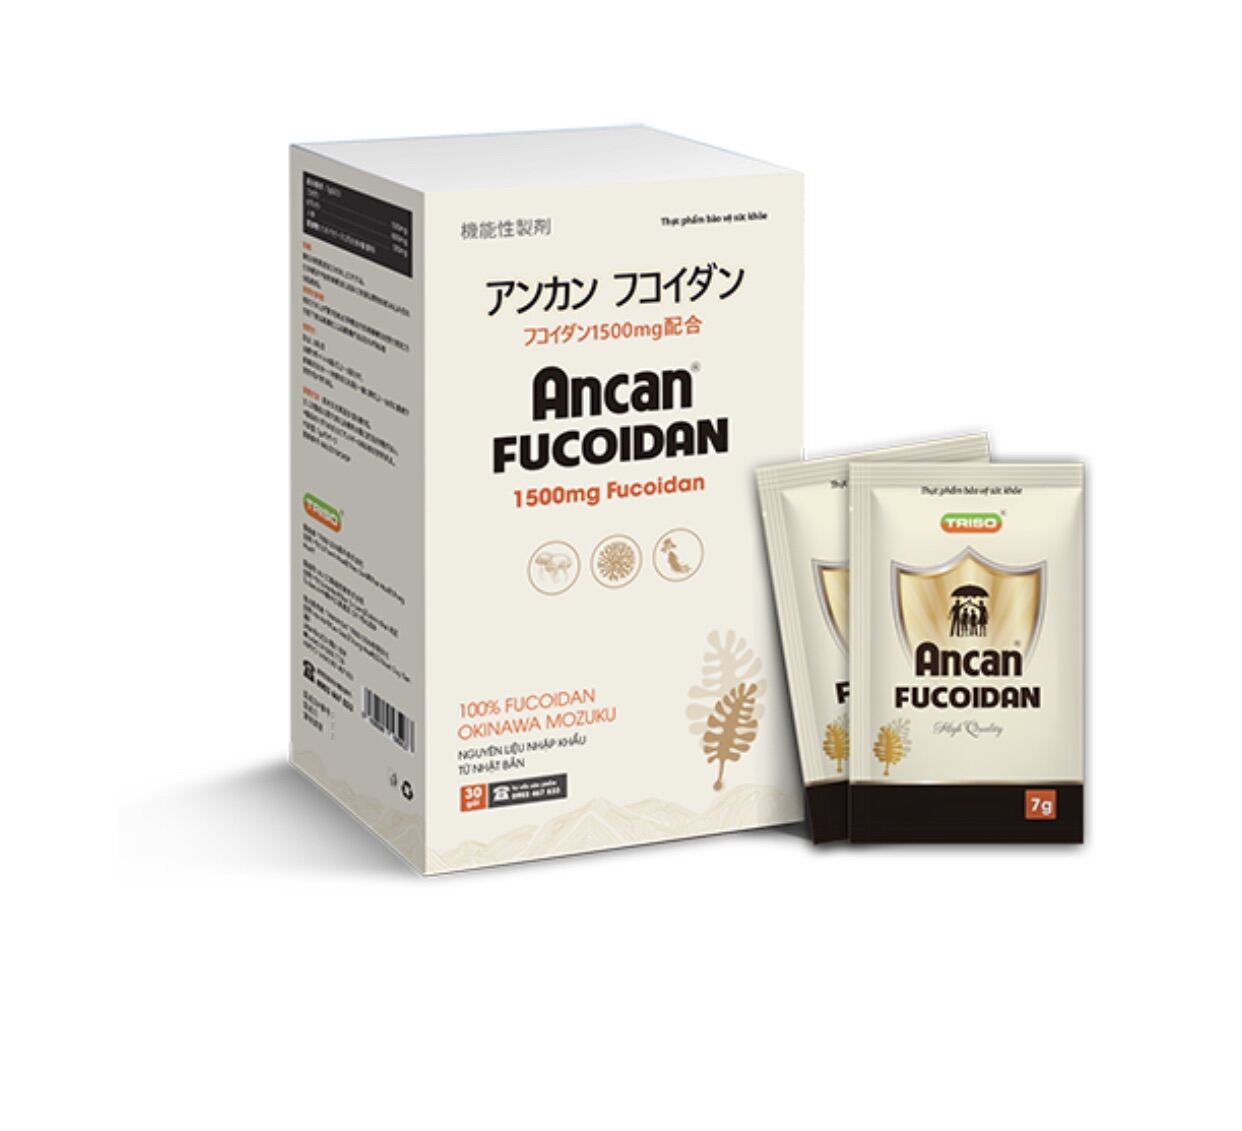 Ancan Fucoidan - Tăng sức đề kháng